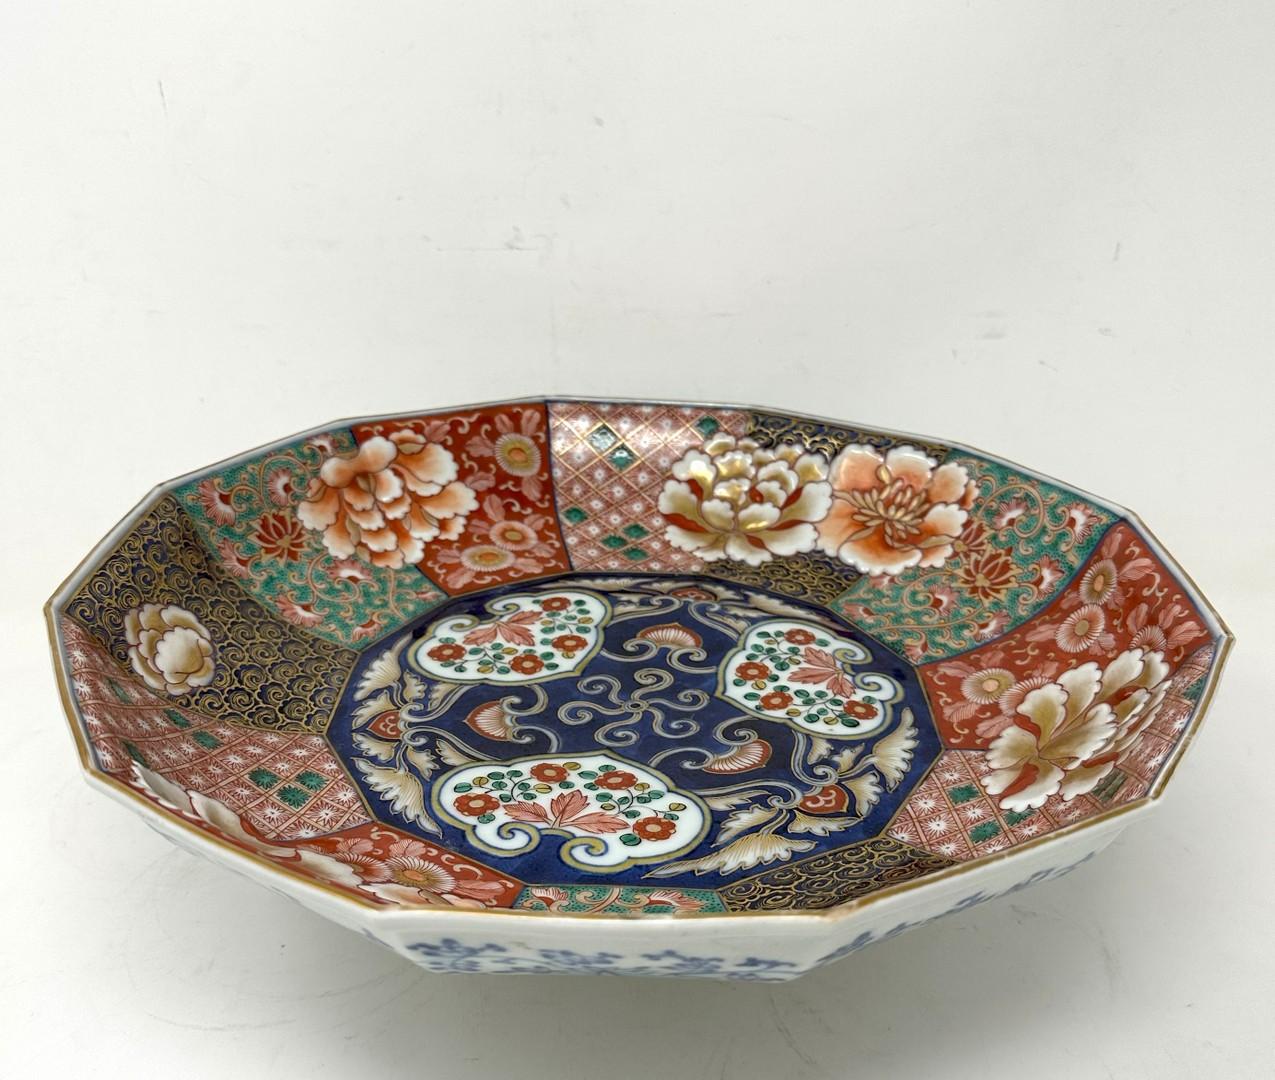 Antique Japanese Imari Porcelain Bowl Centerpiece Fukazawa Koransha Meiji Period 1